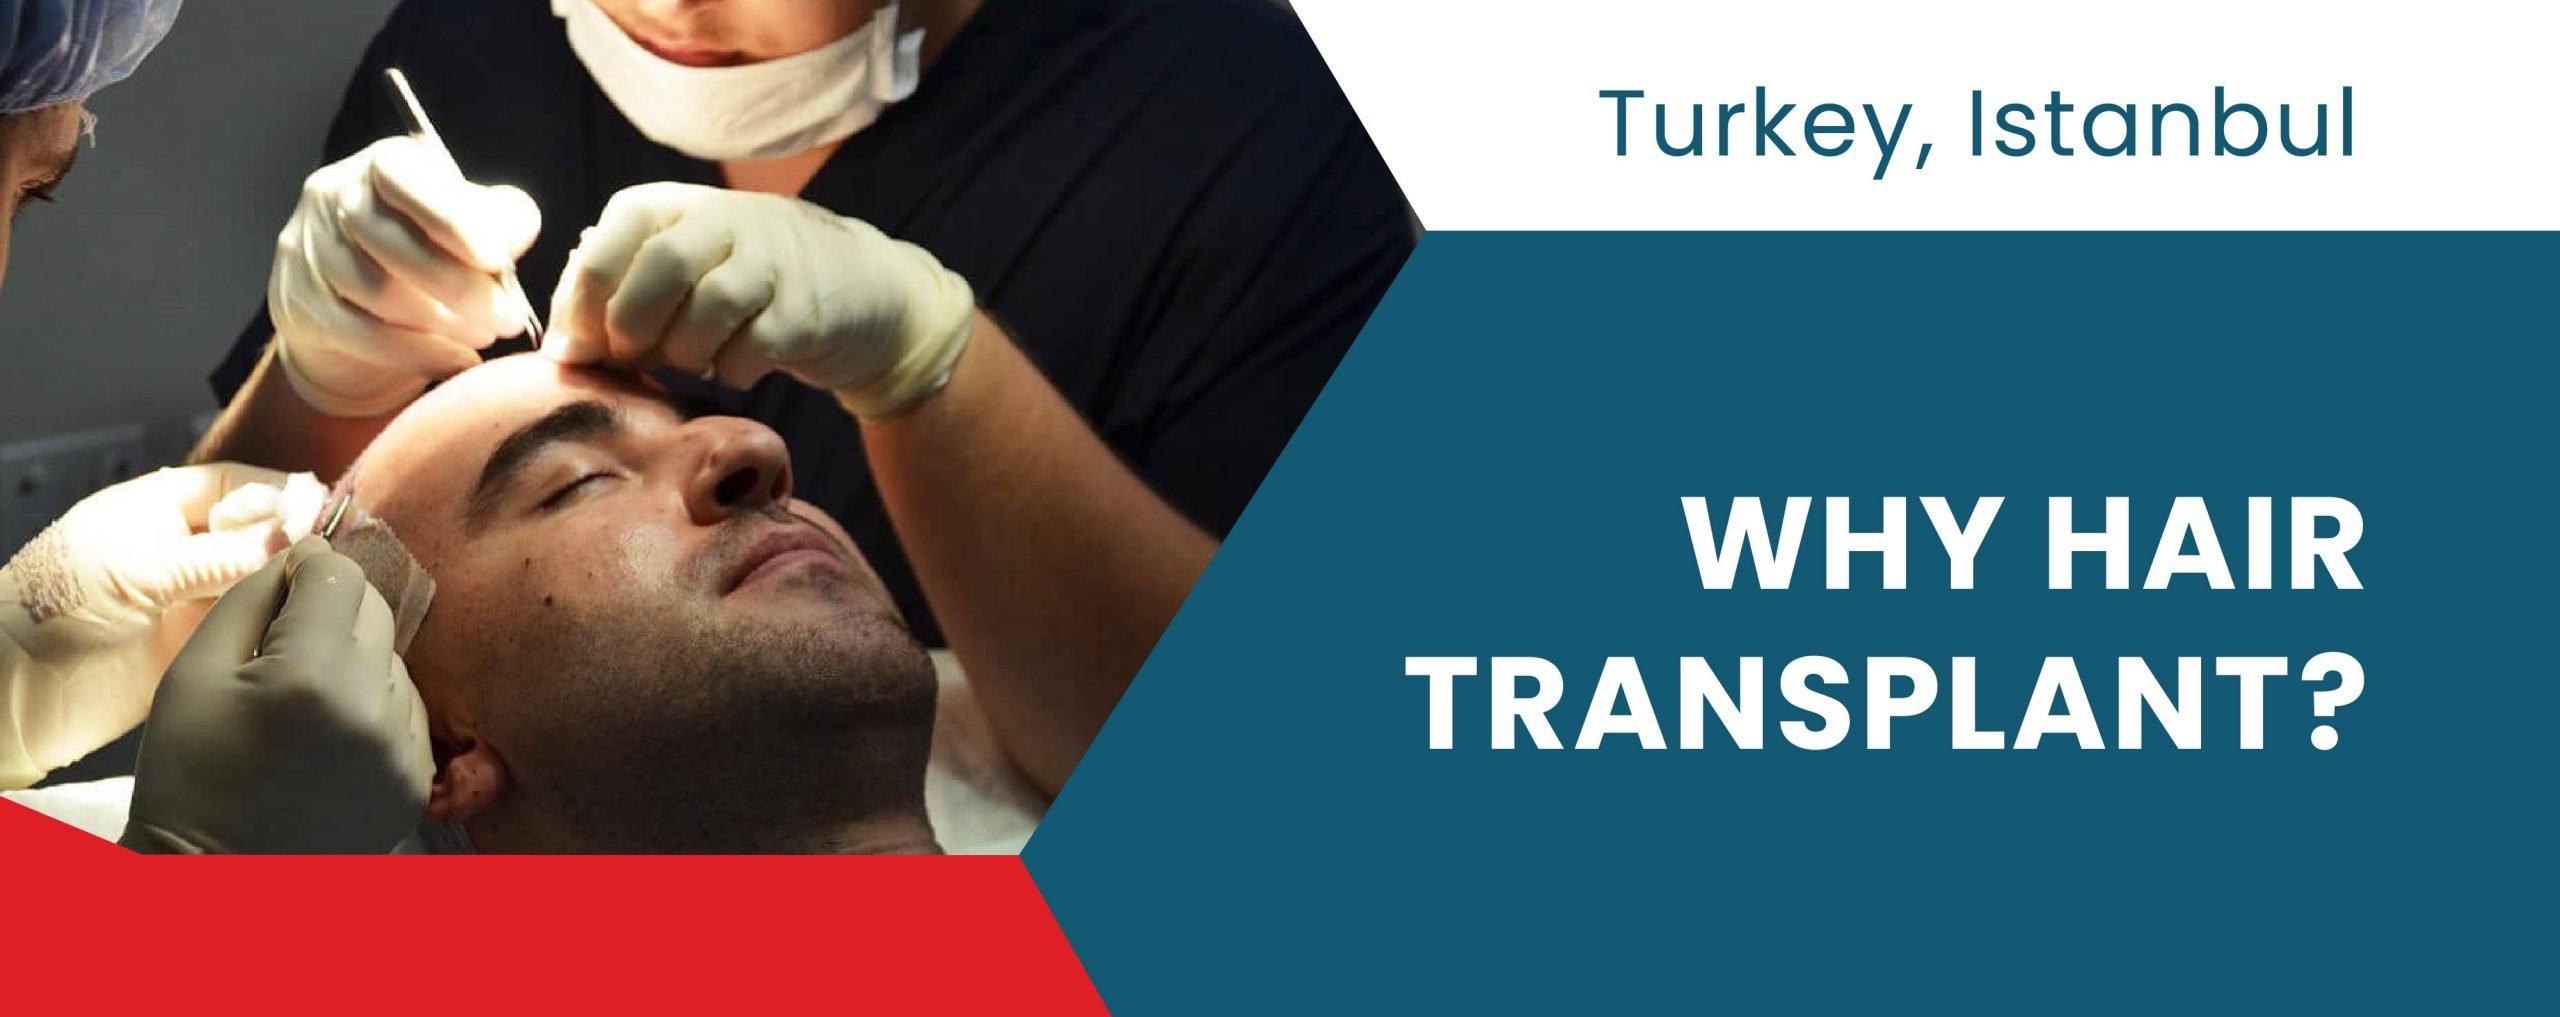 Why Hair Transplant in Turkey